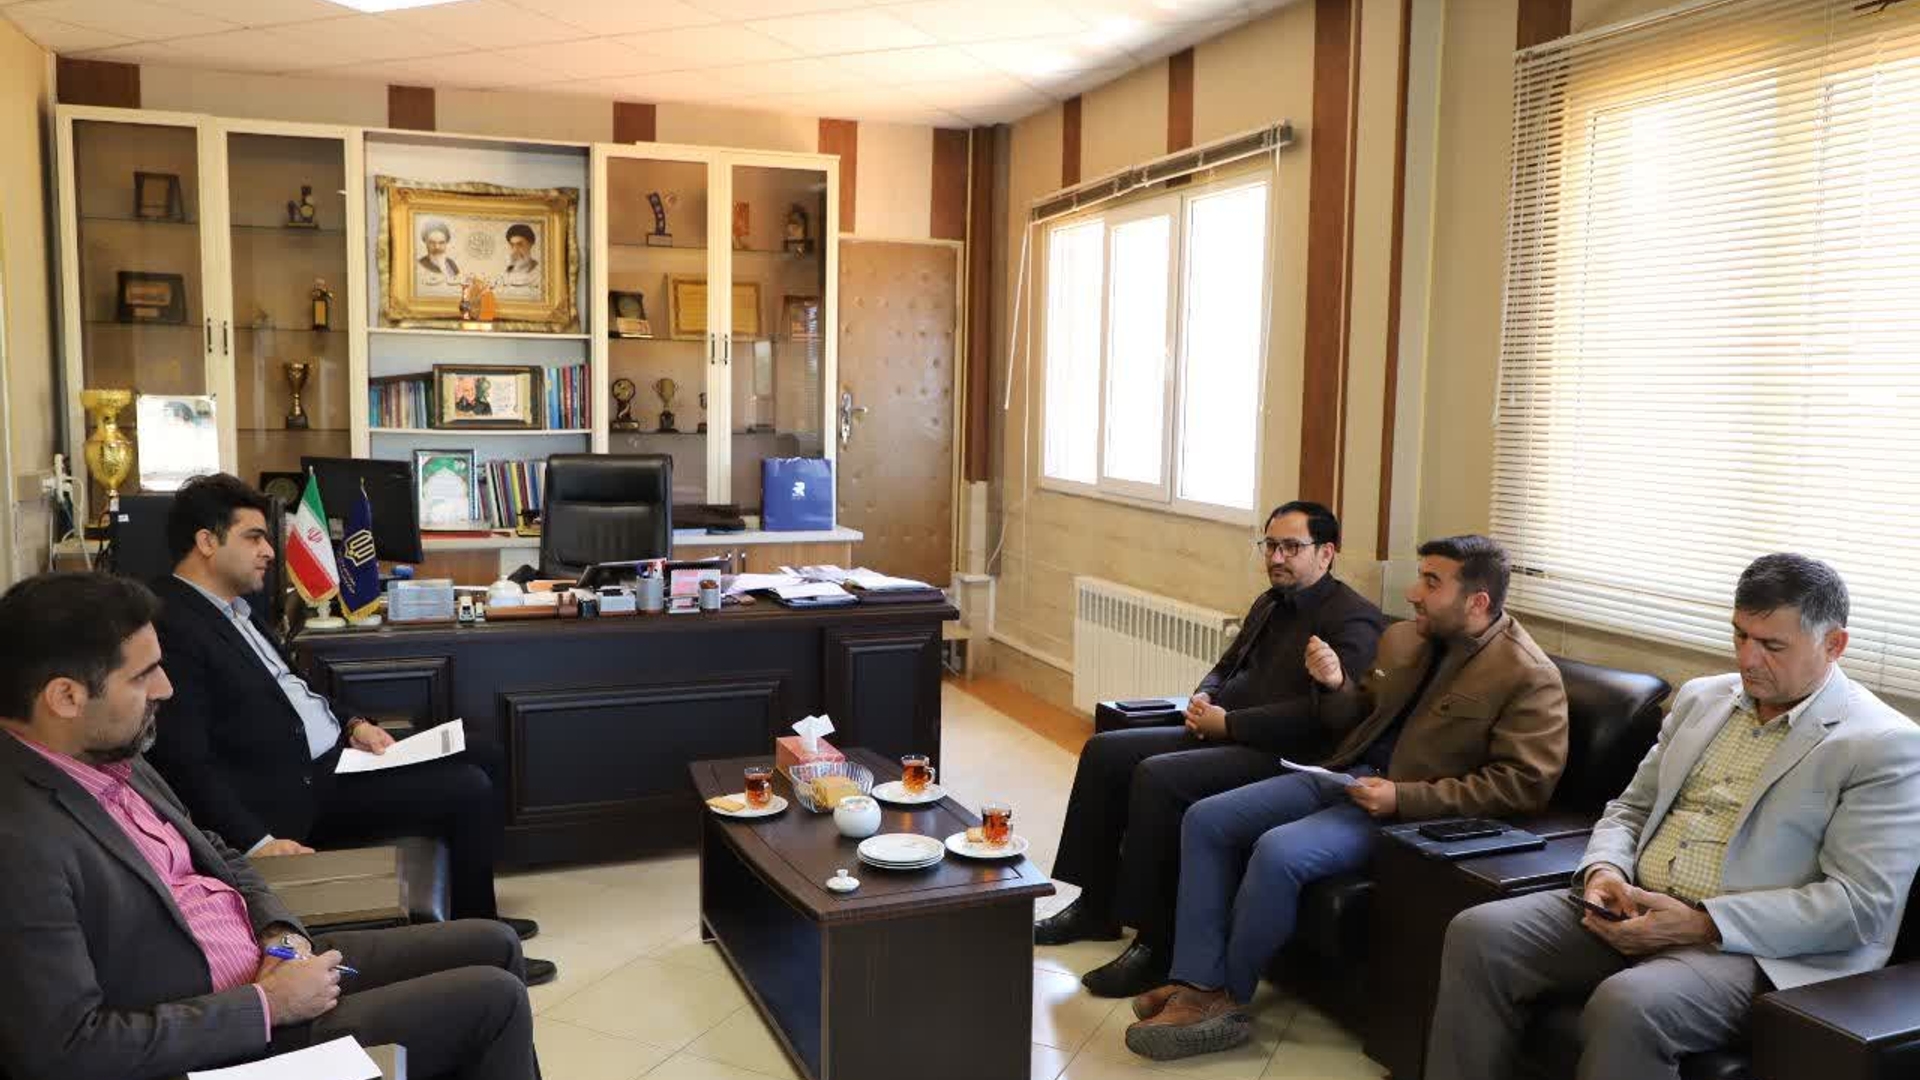 دیدار فرماندار کمیجان به اتفاق مدیر مرکز حرکتهای مردمی استان با مدیرکل نوسازی و تجهیز مدارس استان